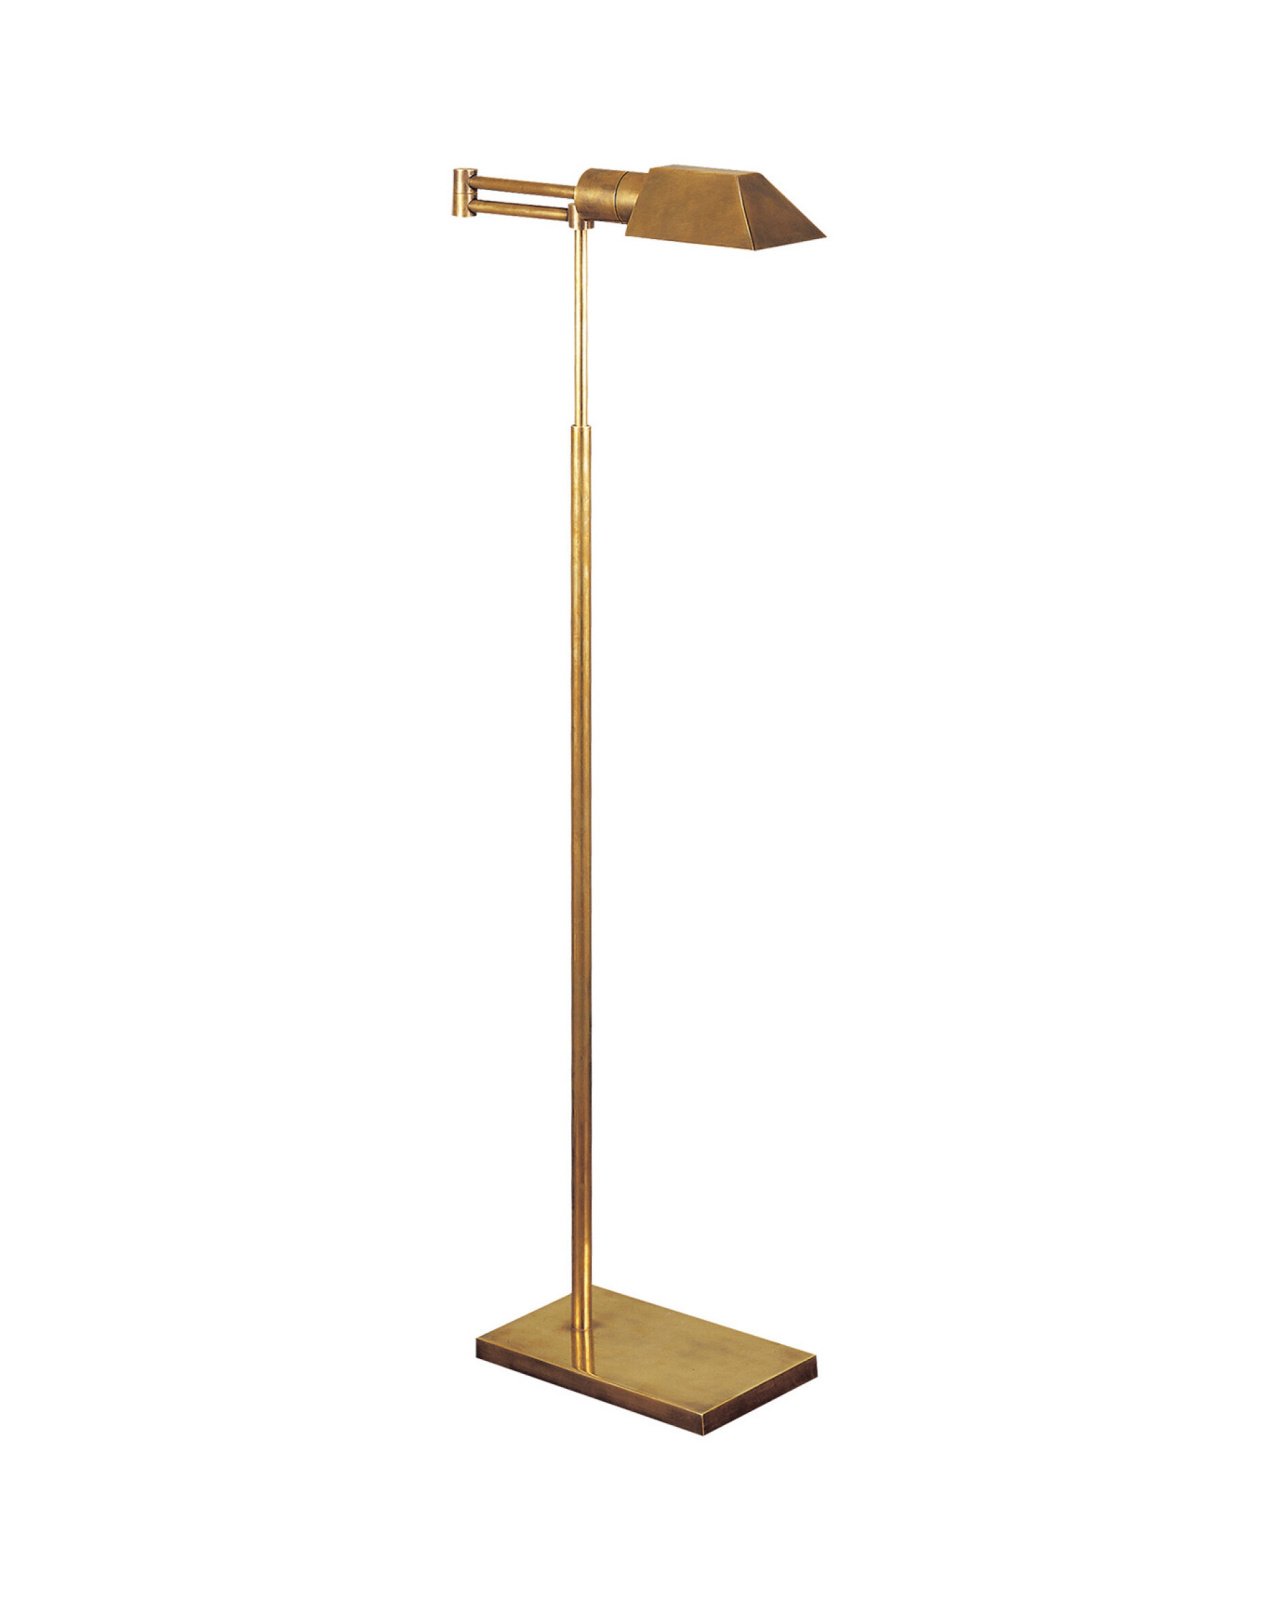 Studio Swing Arm Floor Lamp Antique Brass